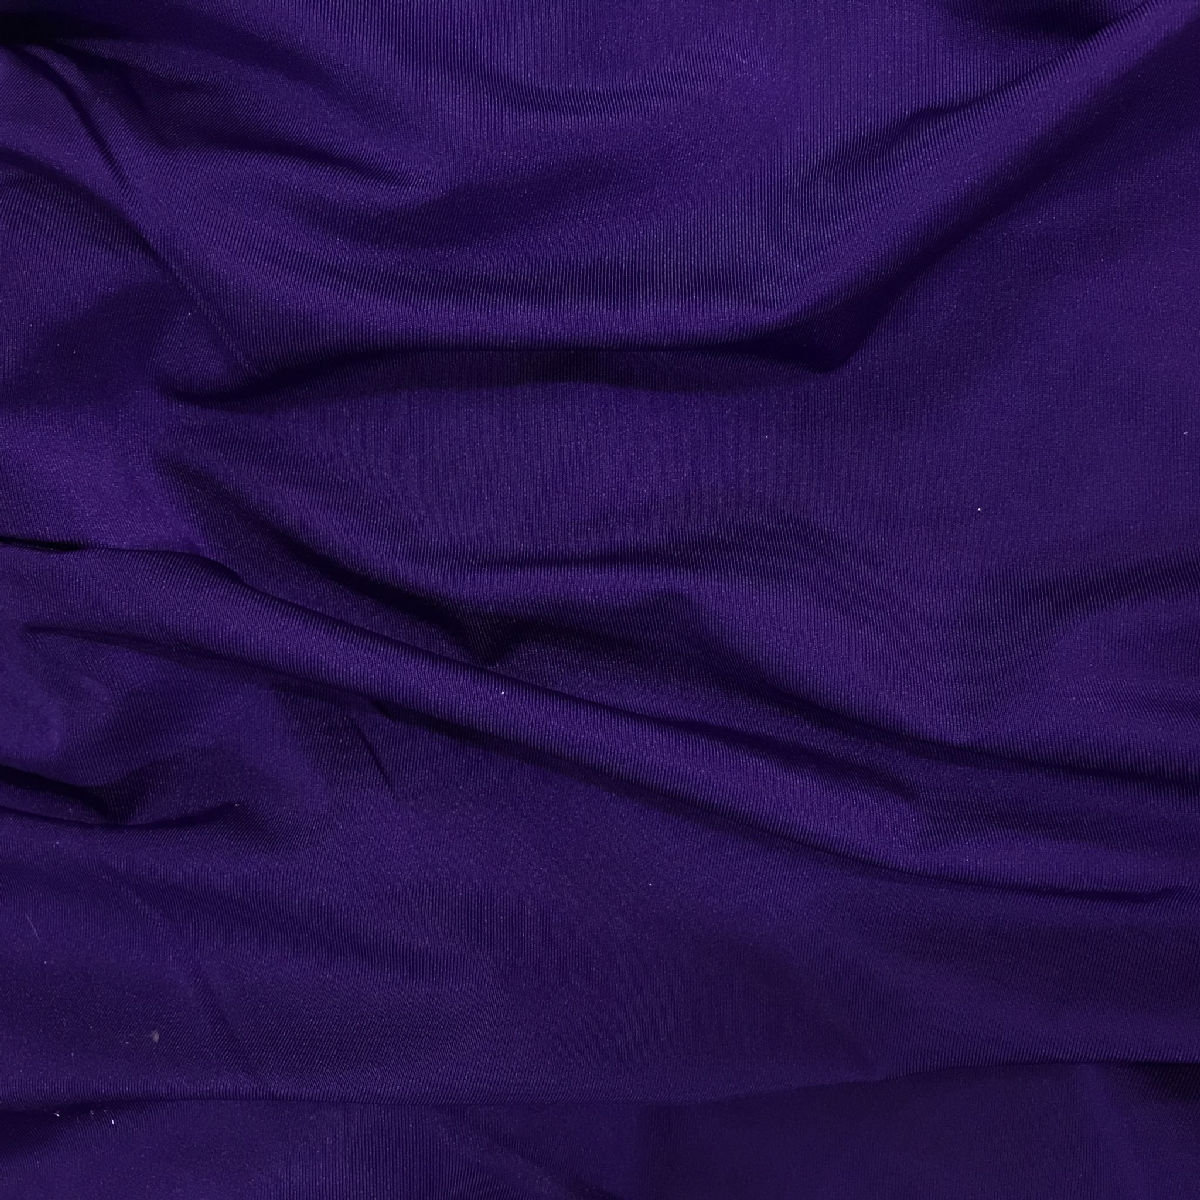 Dermeida DER-20 - Saree Shaper - Dark Purple Nylon Blend, Lycra